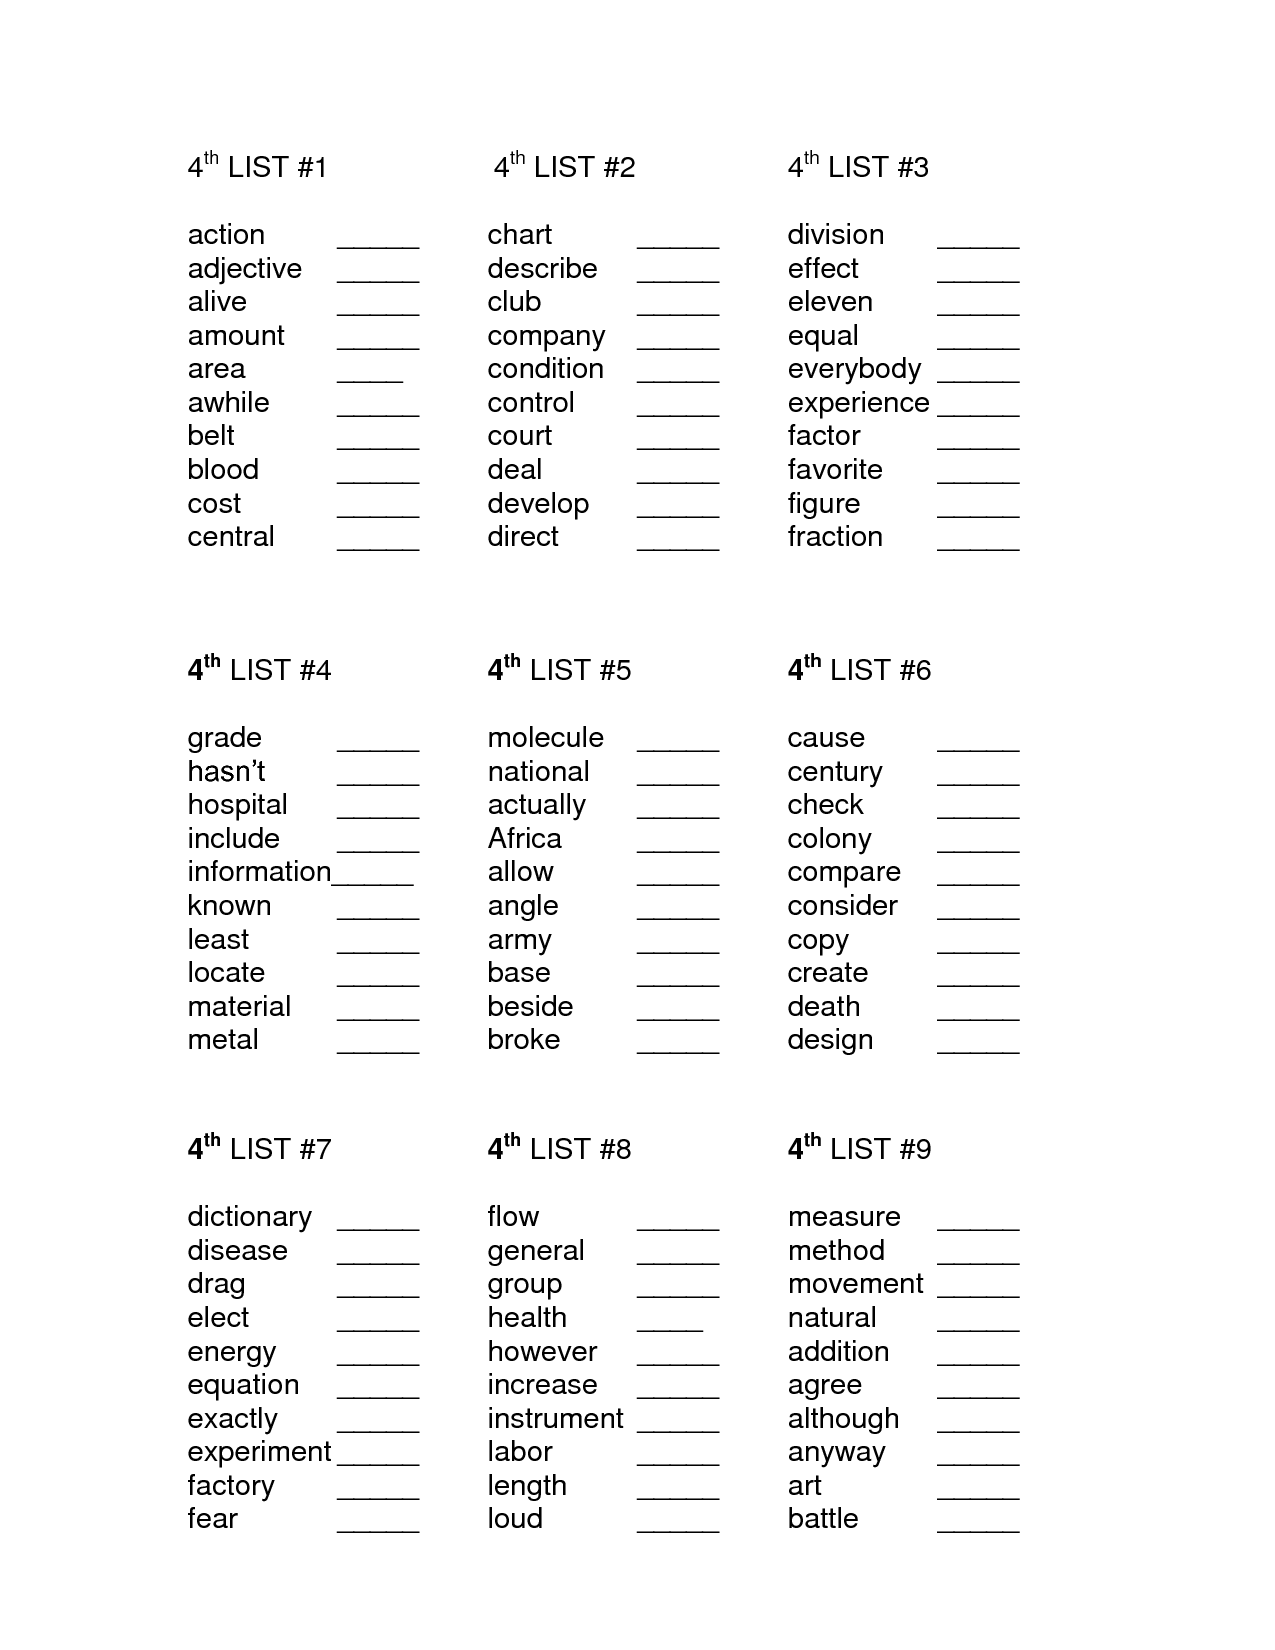 4th Grade Sight Words List